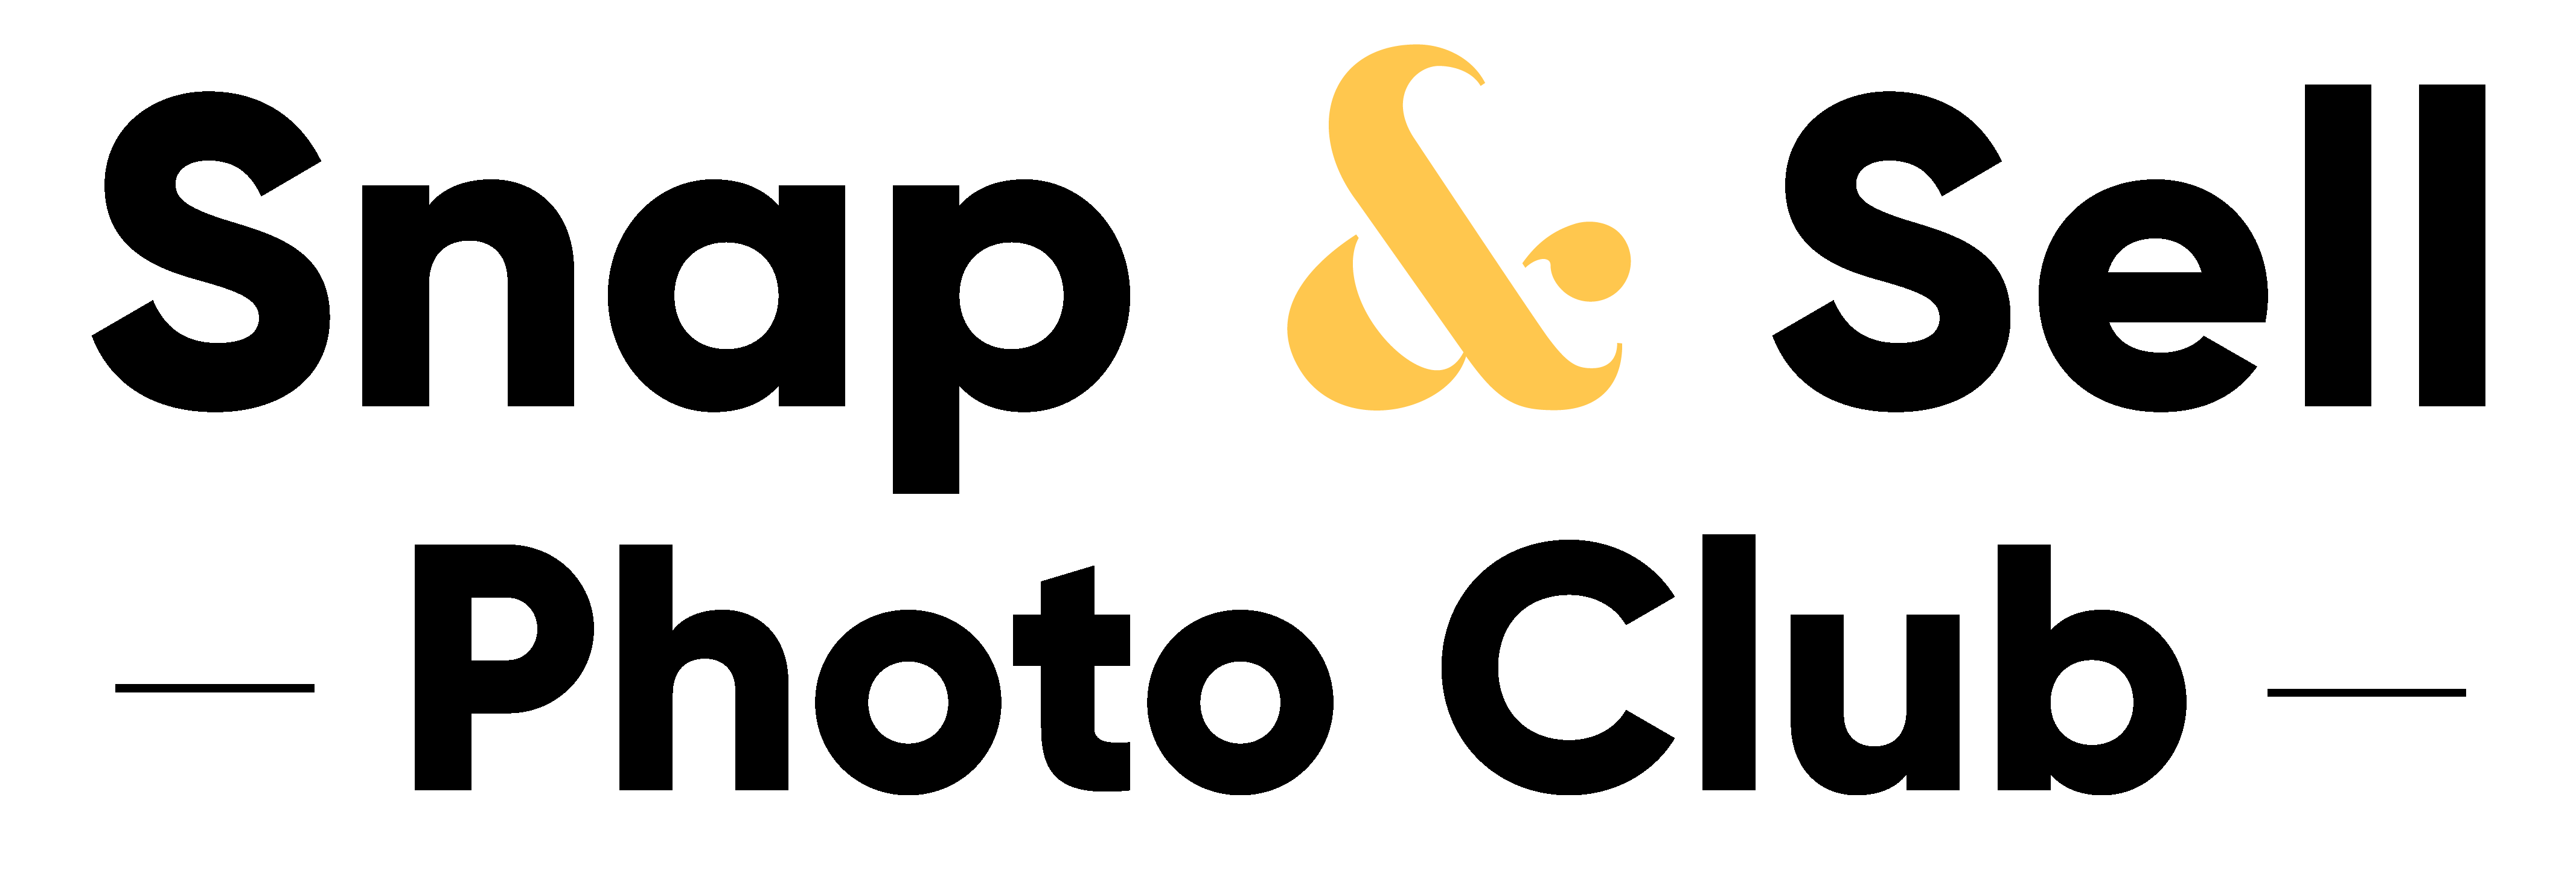 bsc-logo-blkack